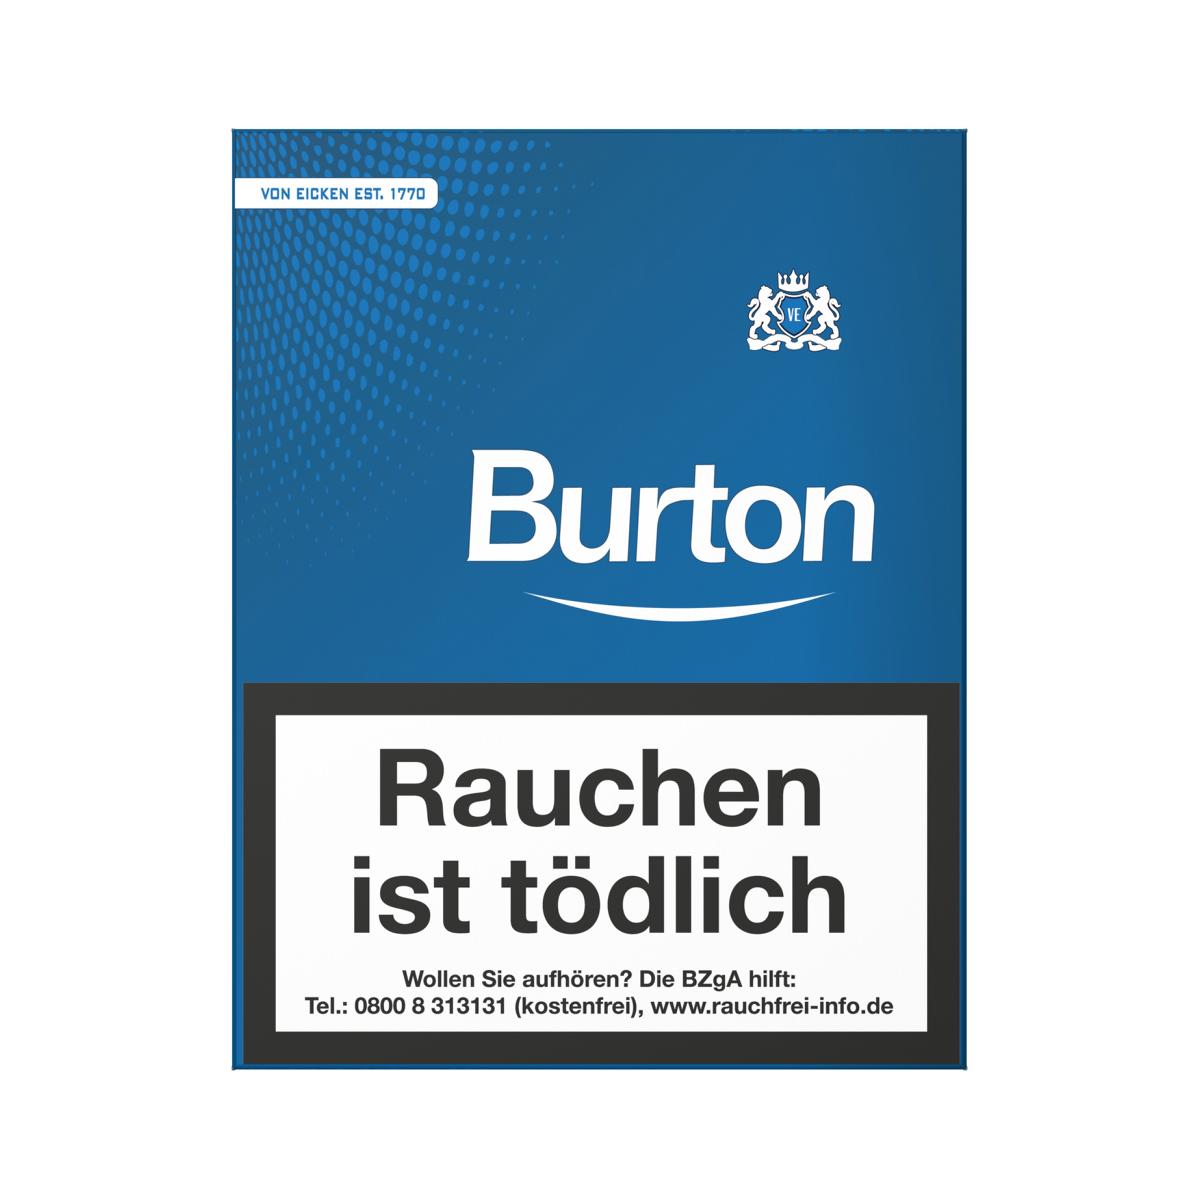 Burton Filter Cigarillos Blue mit Naturdeckblatt 25er Einzelschachtel (ehemals White)